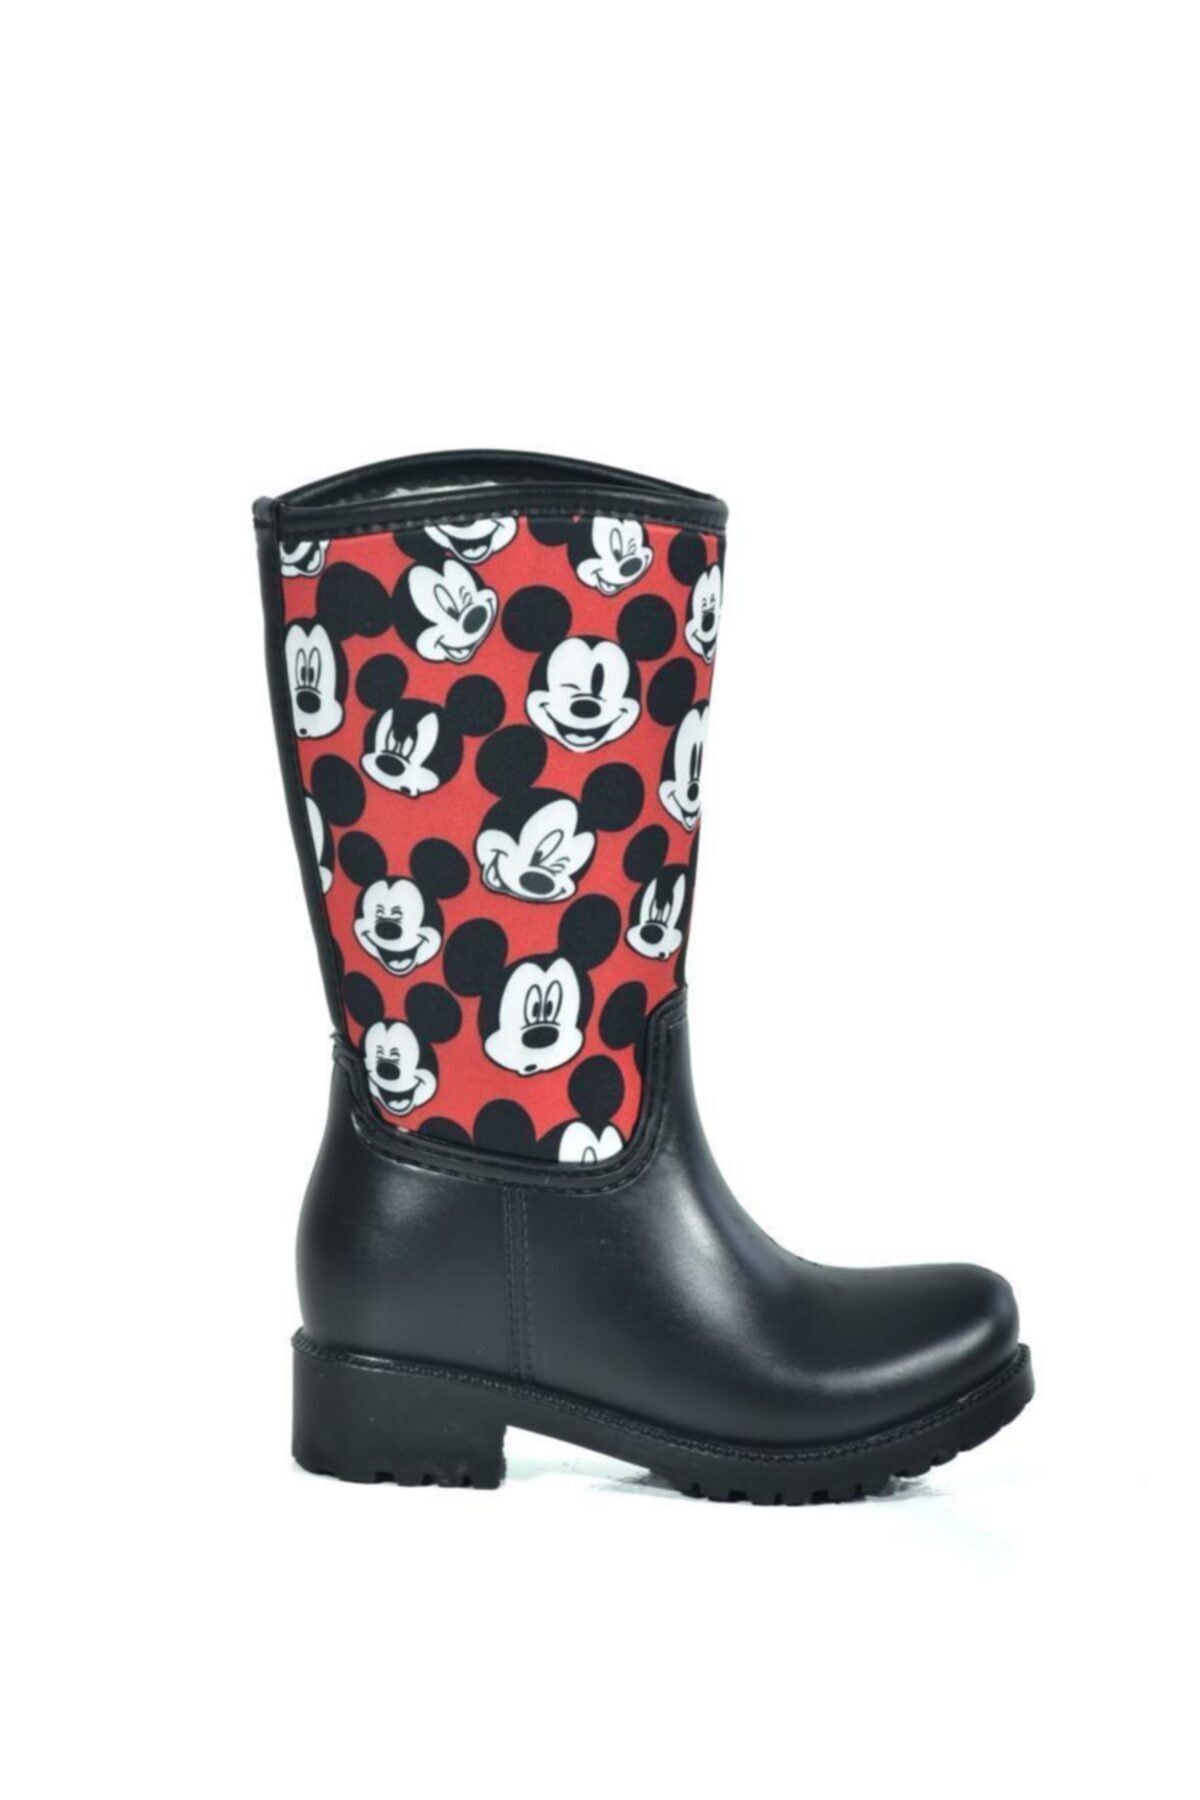 Mickey Mouse Siyah Kız Çocuk Yağmur Çizmesi